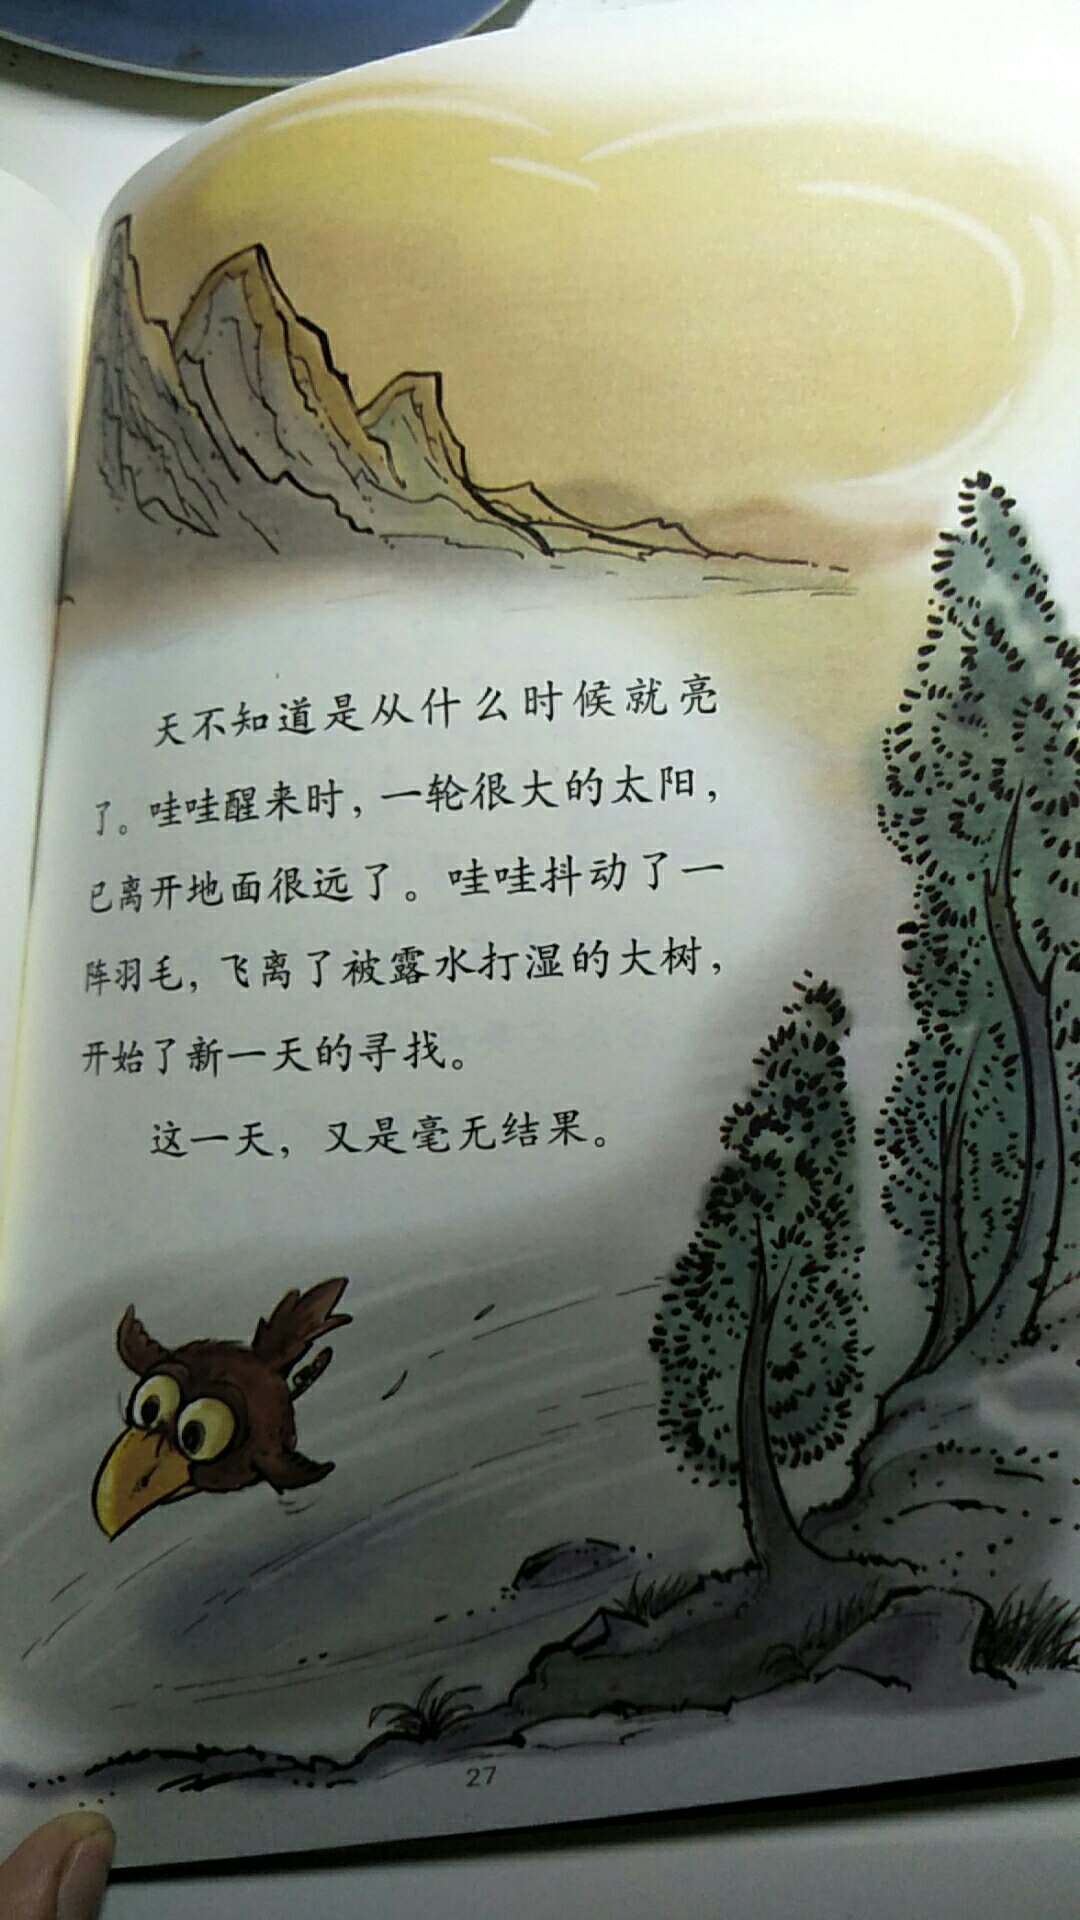 特别好，孩子特别喜欢，曹文轩这种大作家的书就是不一样！推荐大家都买，真的对孩子成长帮助很大！